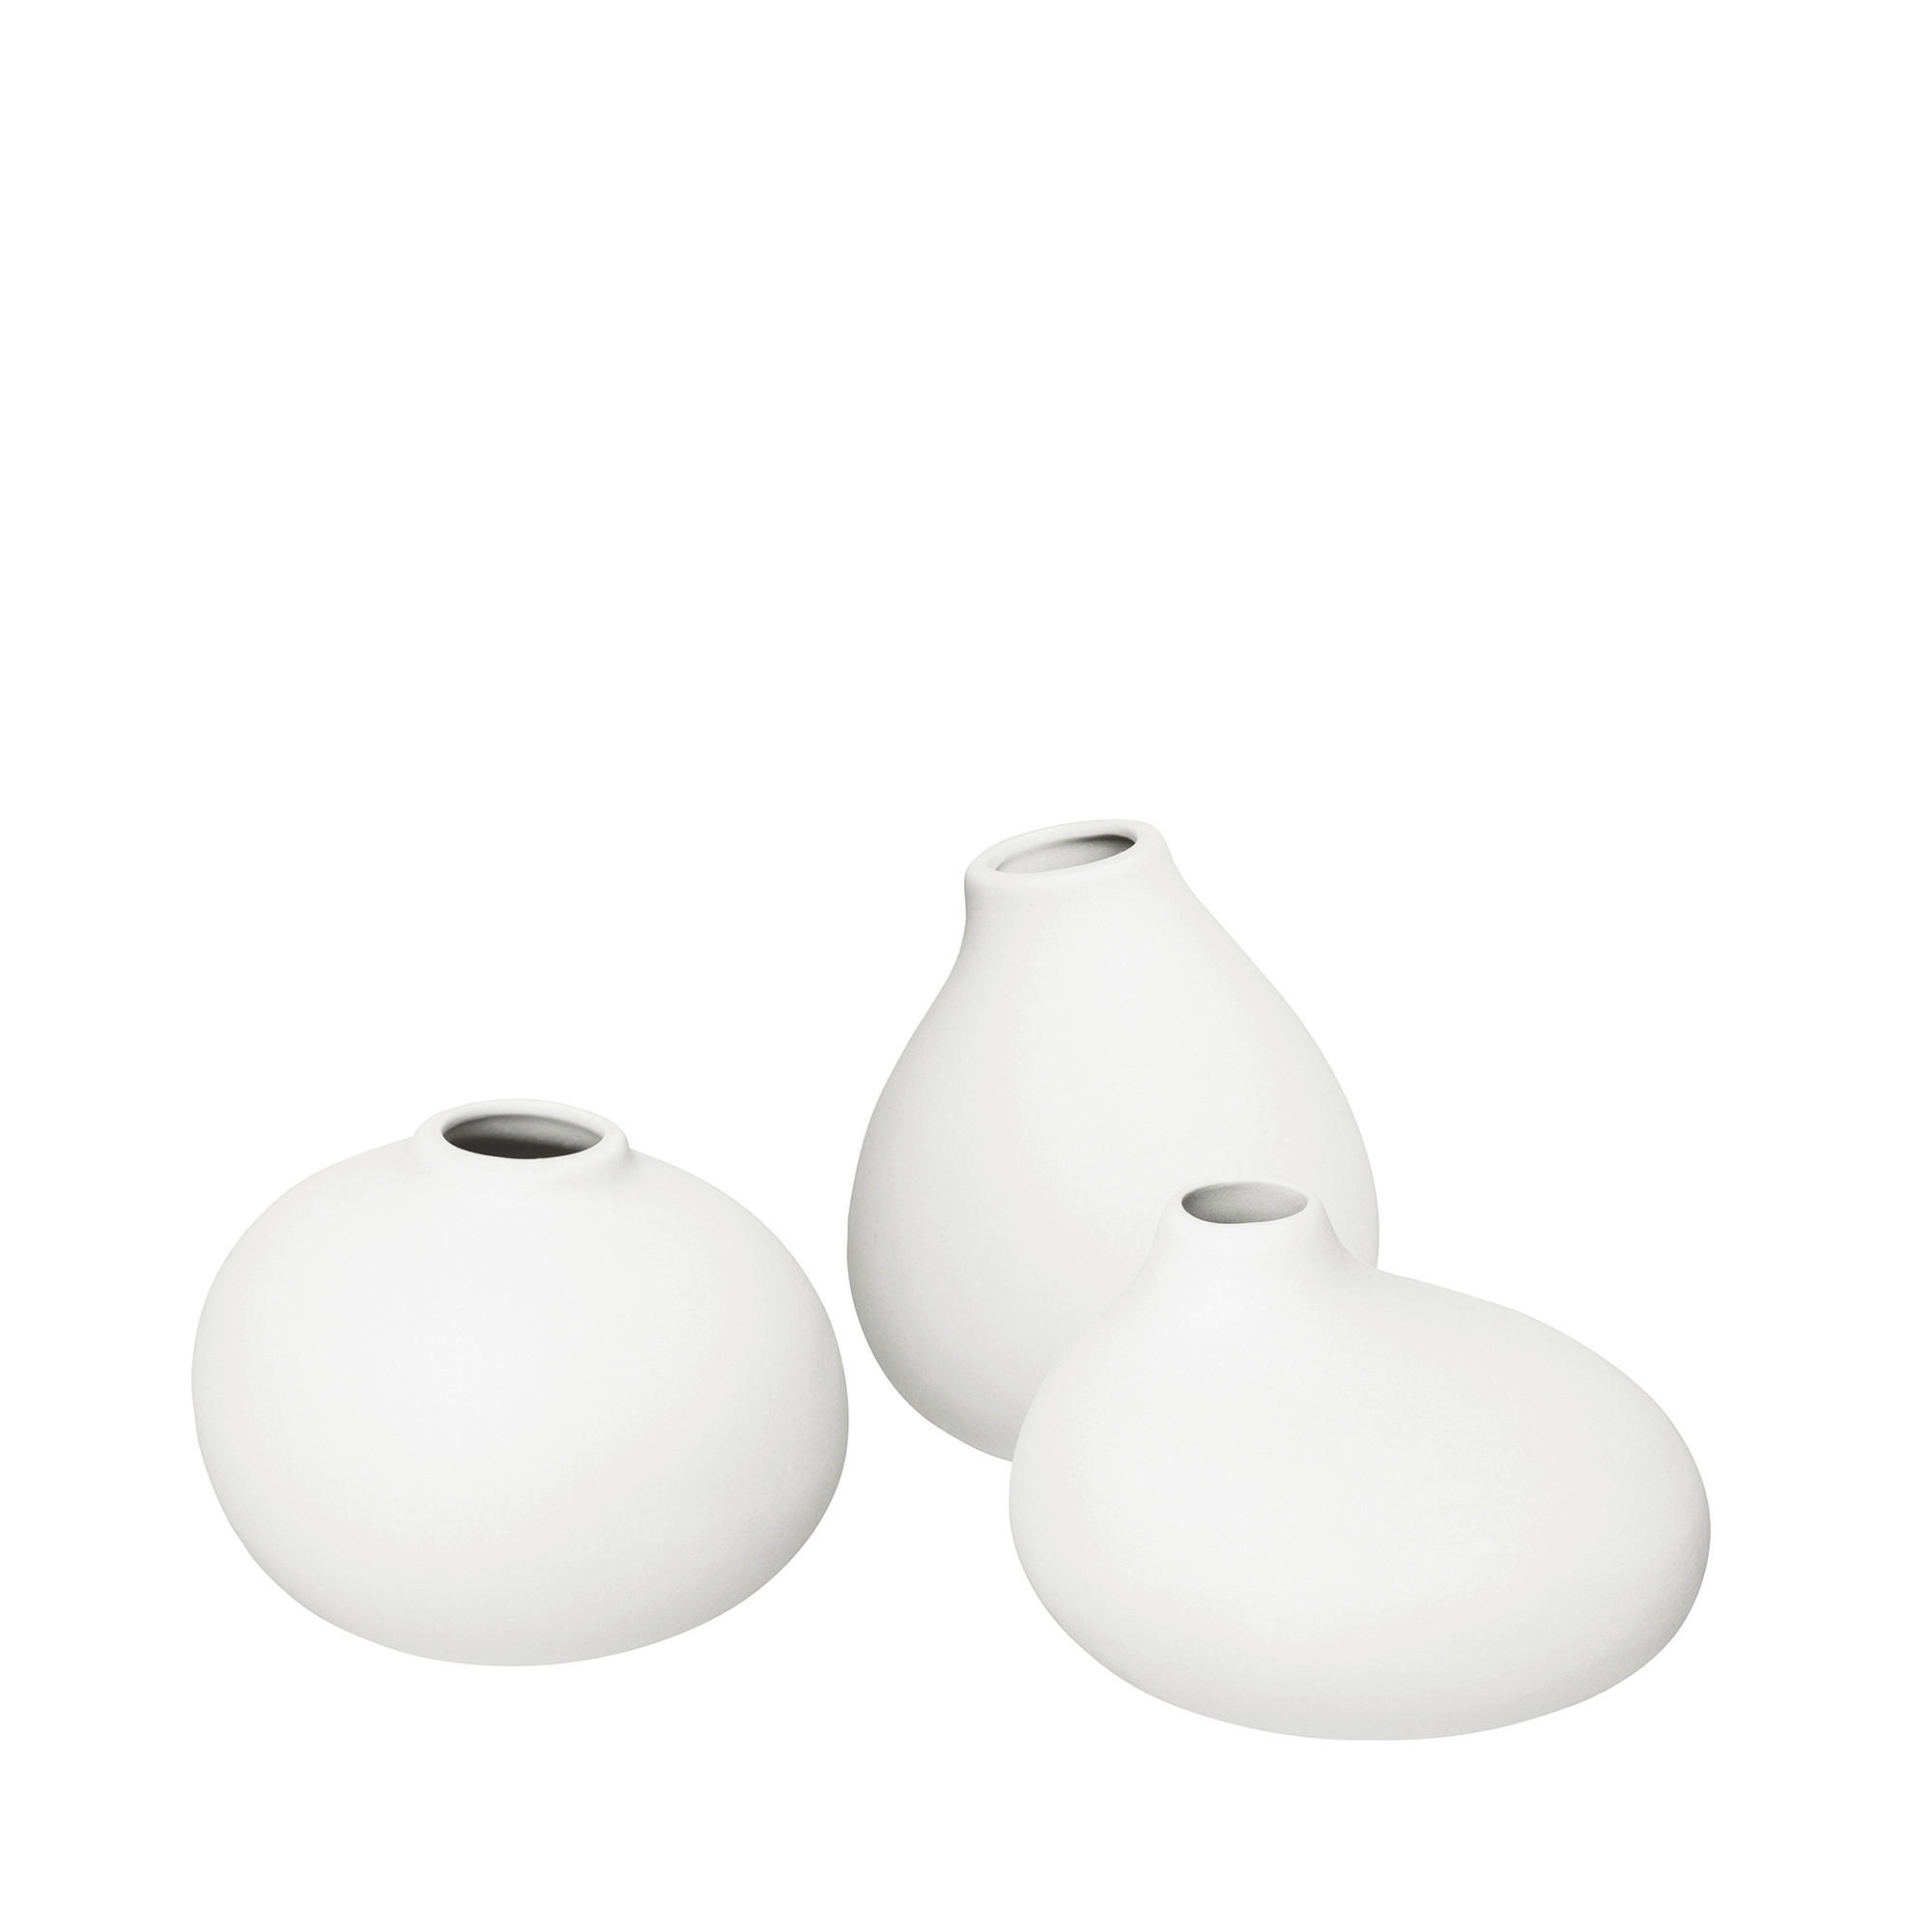 VASE NONA 6,5 cm  - Weiß, Design, Keramik (6,5/9/7cm) - Blomus